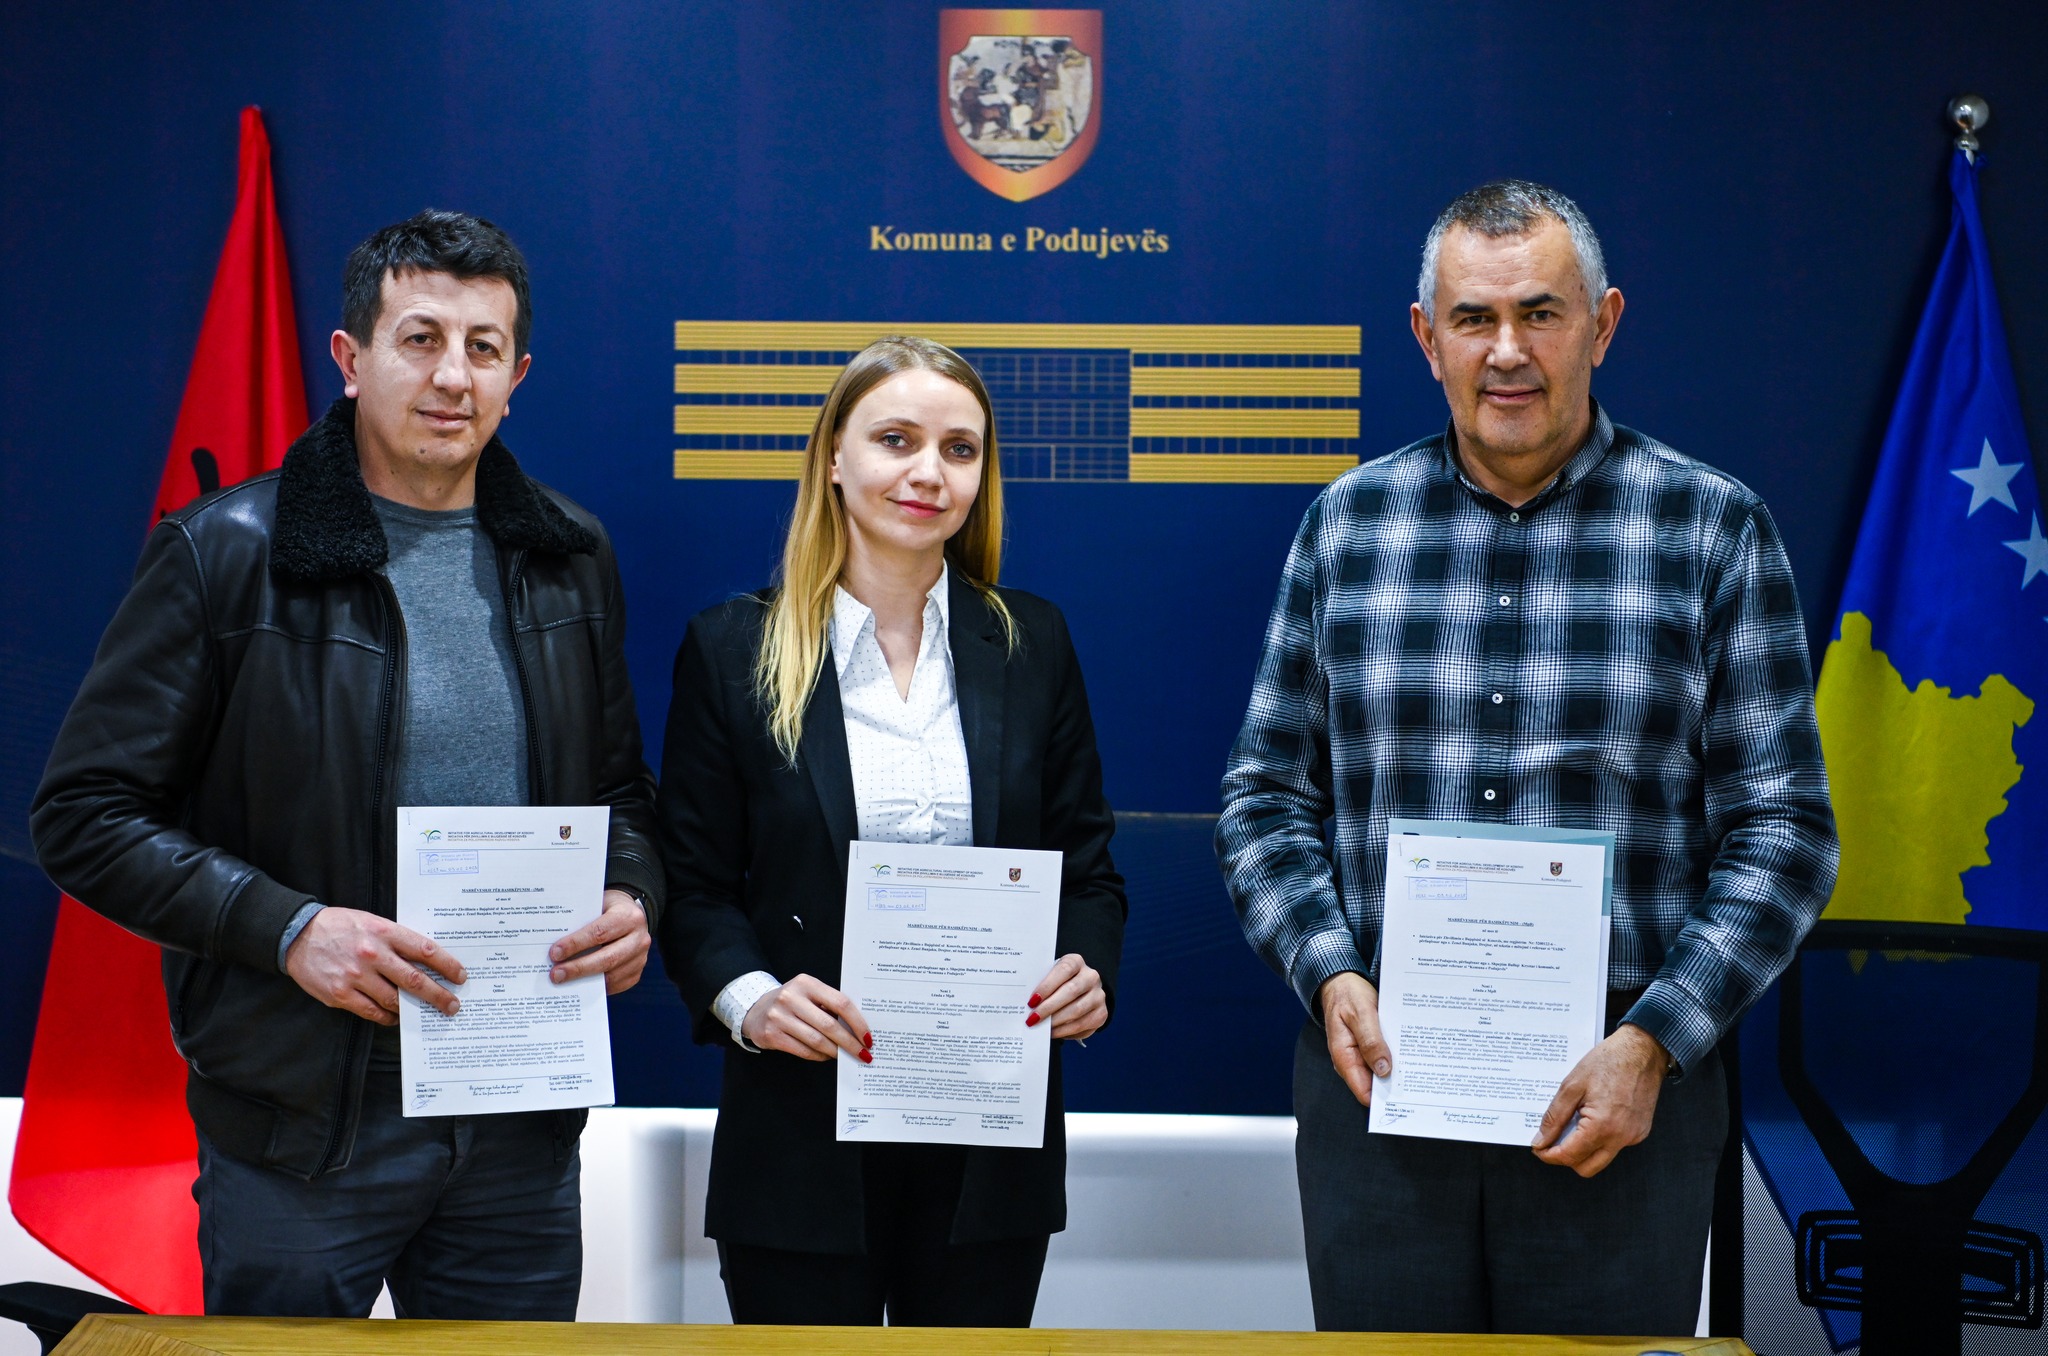  Komuna e Podujevës nënshkruan memorandum bashkëpunimi me Organizatën “IADK”